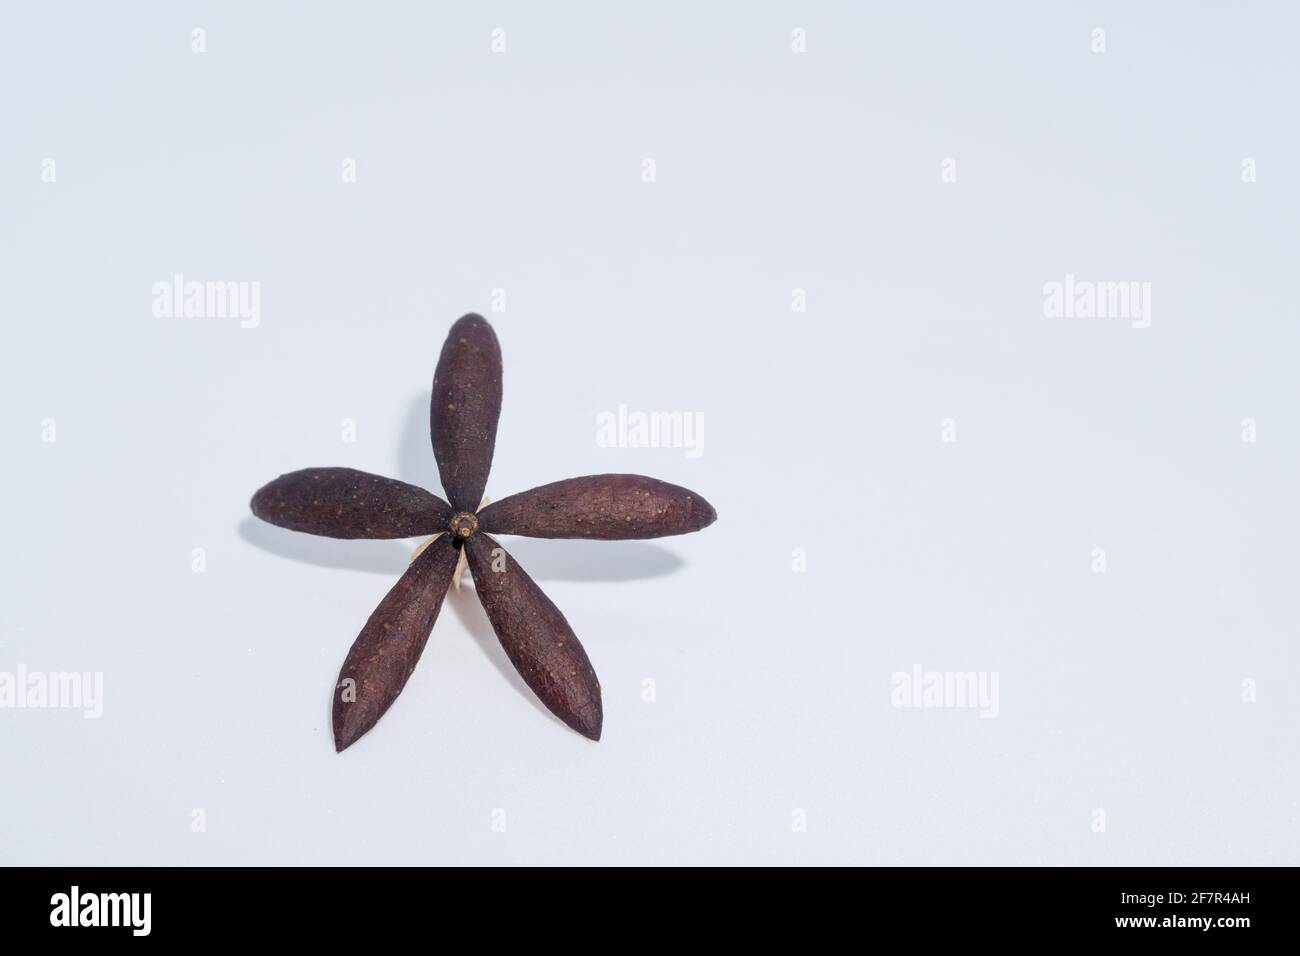 Un colpo vicino su di un seme indiano secco di lilla, un seme asciutto aperto quasi assomiglia ad un artefatto. Azadirachta indica, comunemente noto come neem, nimtree o. Foto Stock